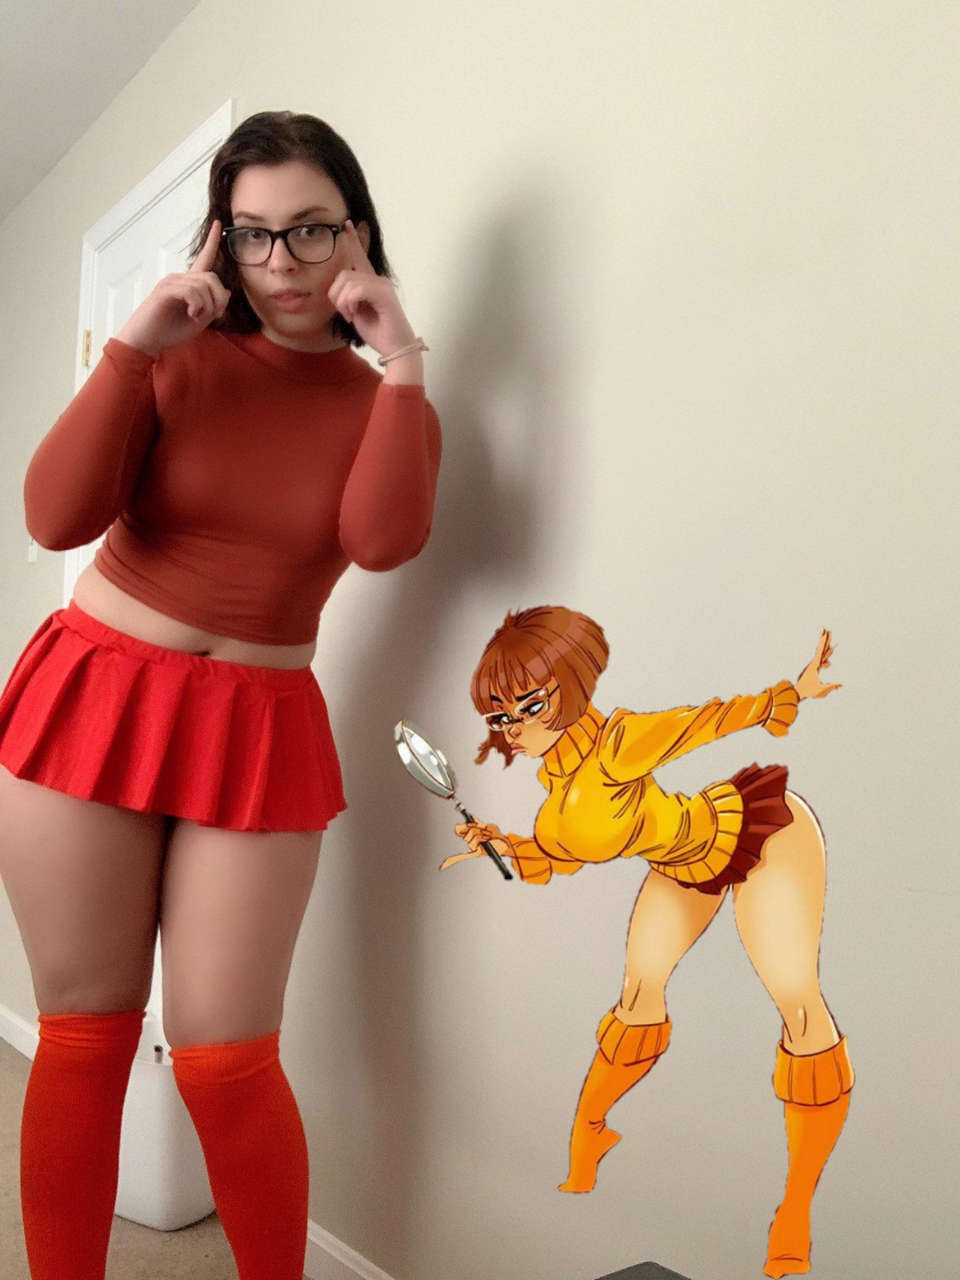 Link Below For Velma Conten